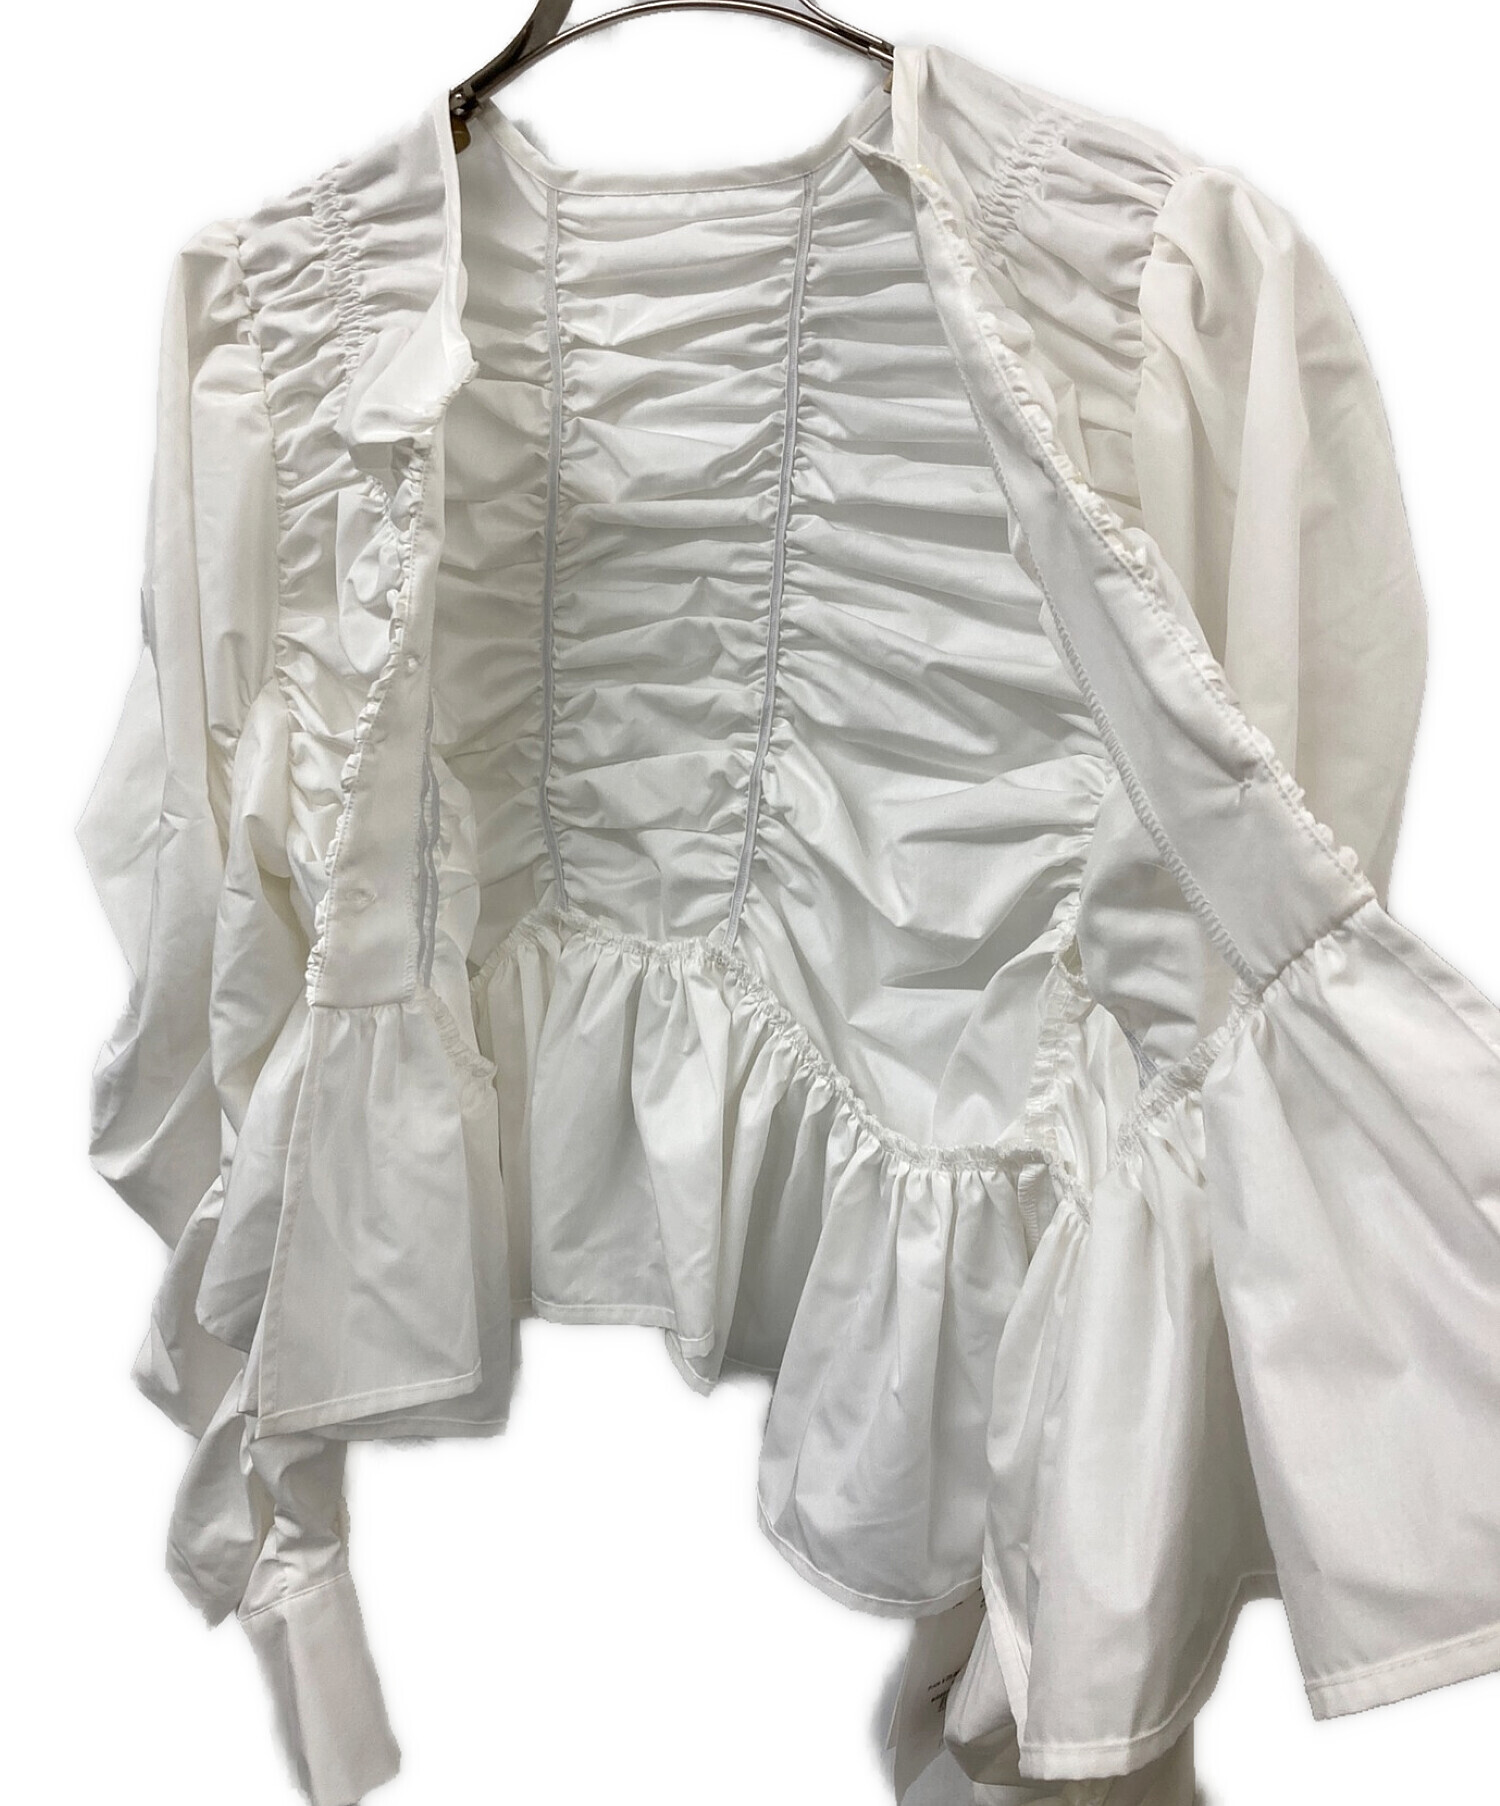 MECRE (メクル) アシンメトリーギャザーノーカラーシャツ ホワイト サイズ:F 未使用品